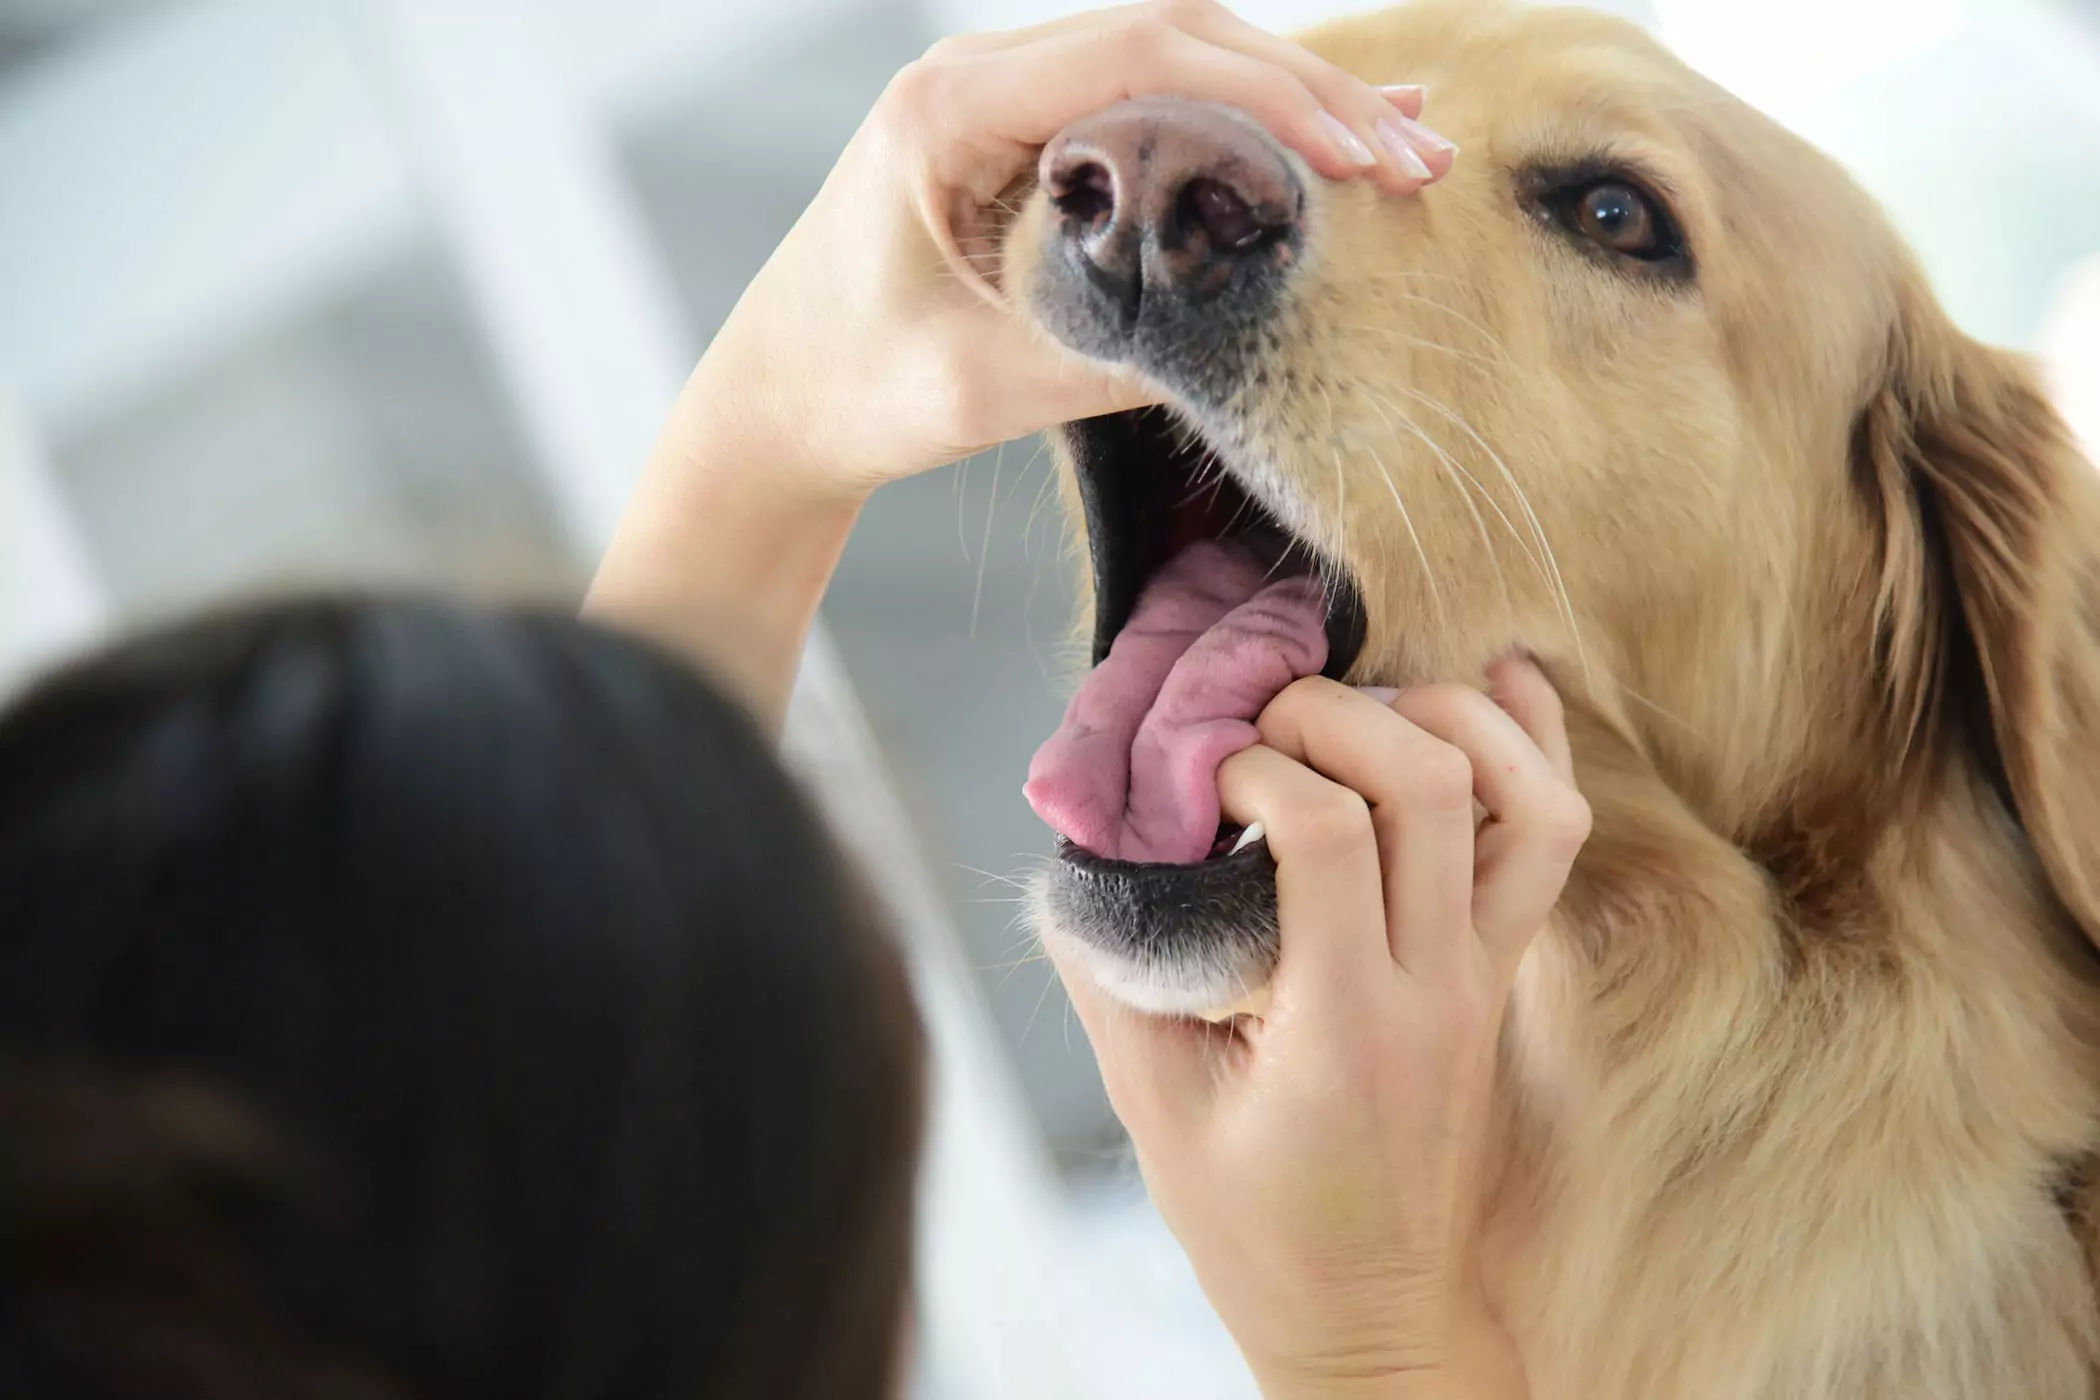 狗的嘴比人的干净吗？狗狗的嘴巴要比人类干净？这是偷换概念，两者没有可比性